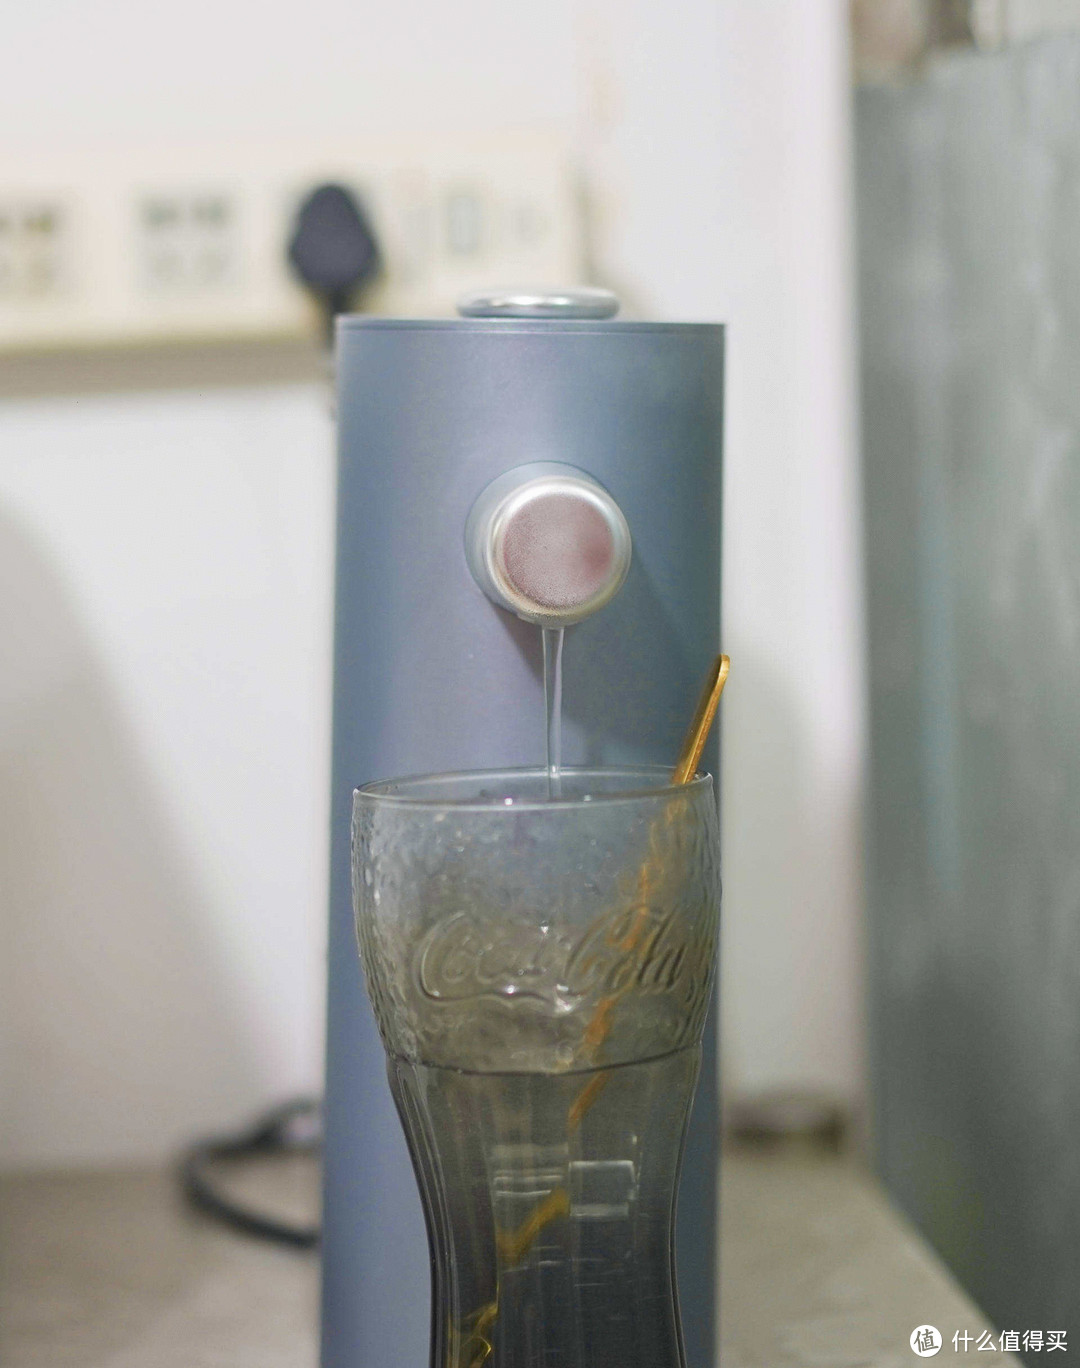 冬日里口中的小温暖-Laica莱卡台式直饮即热饮水机